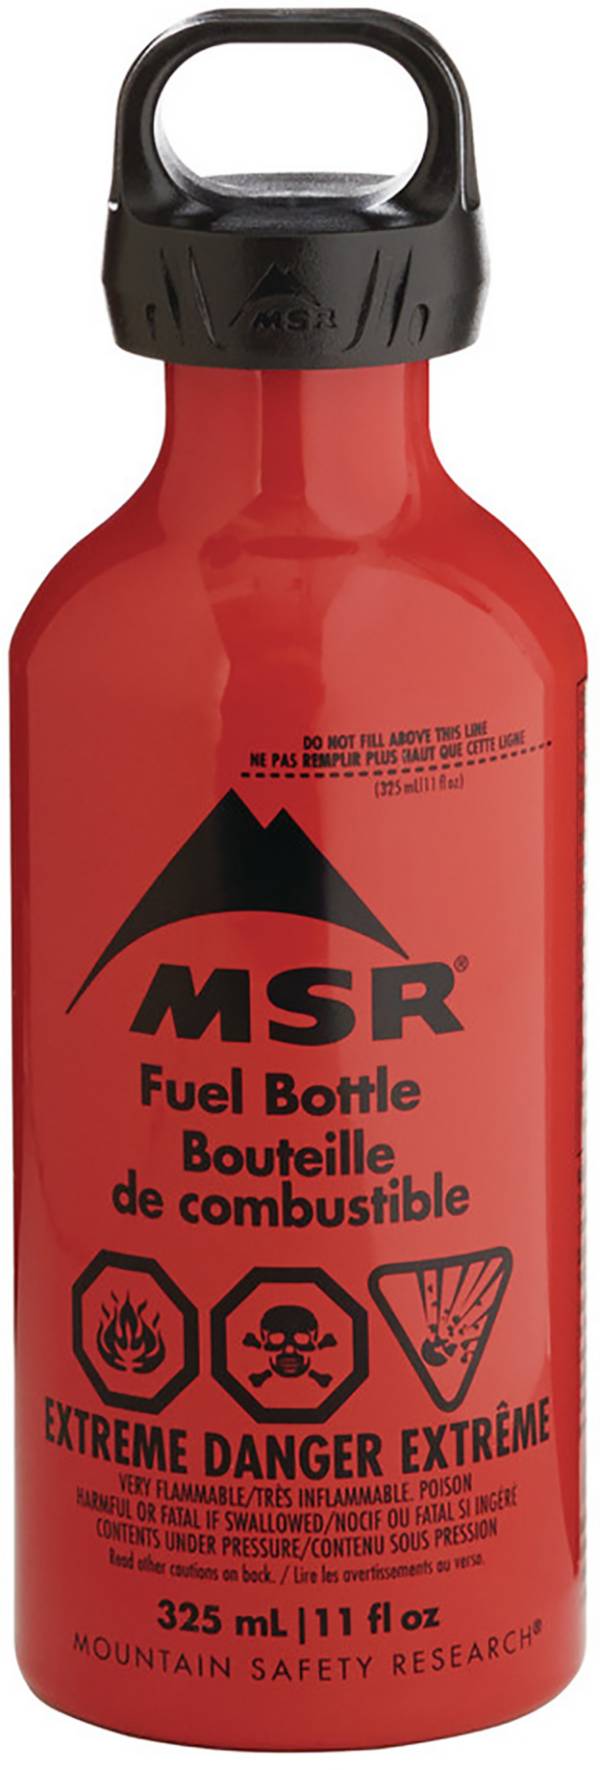 MSR 11 oz. Fuel Bottle product image